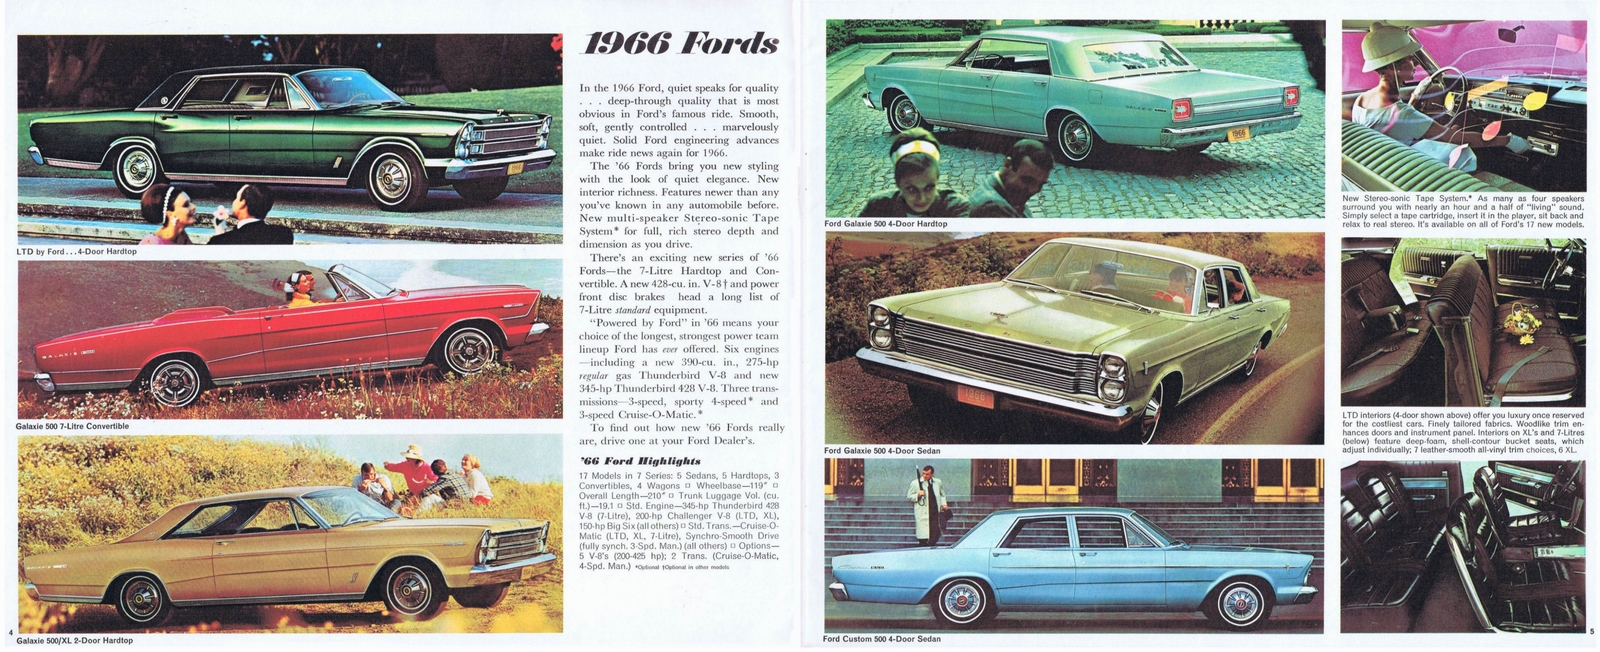 n_1966 Ford Full Line (Cdn) 04-05.jpg